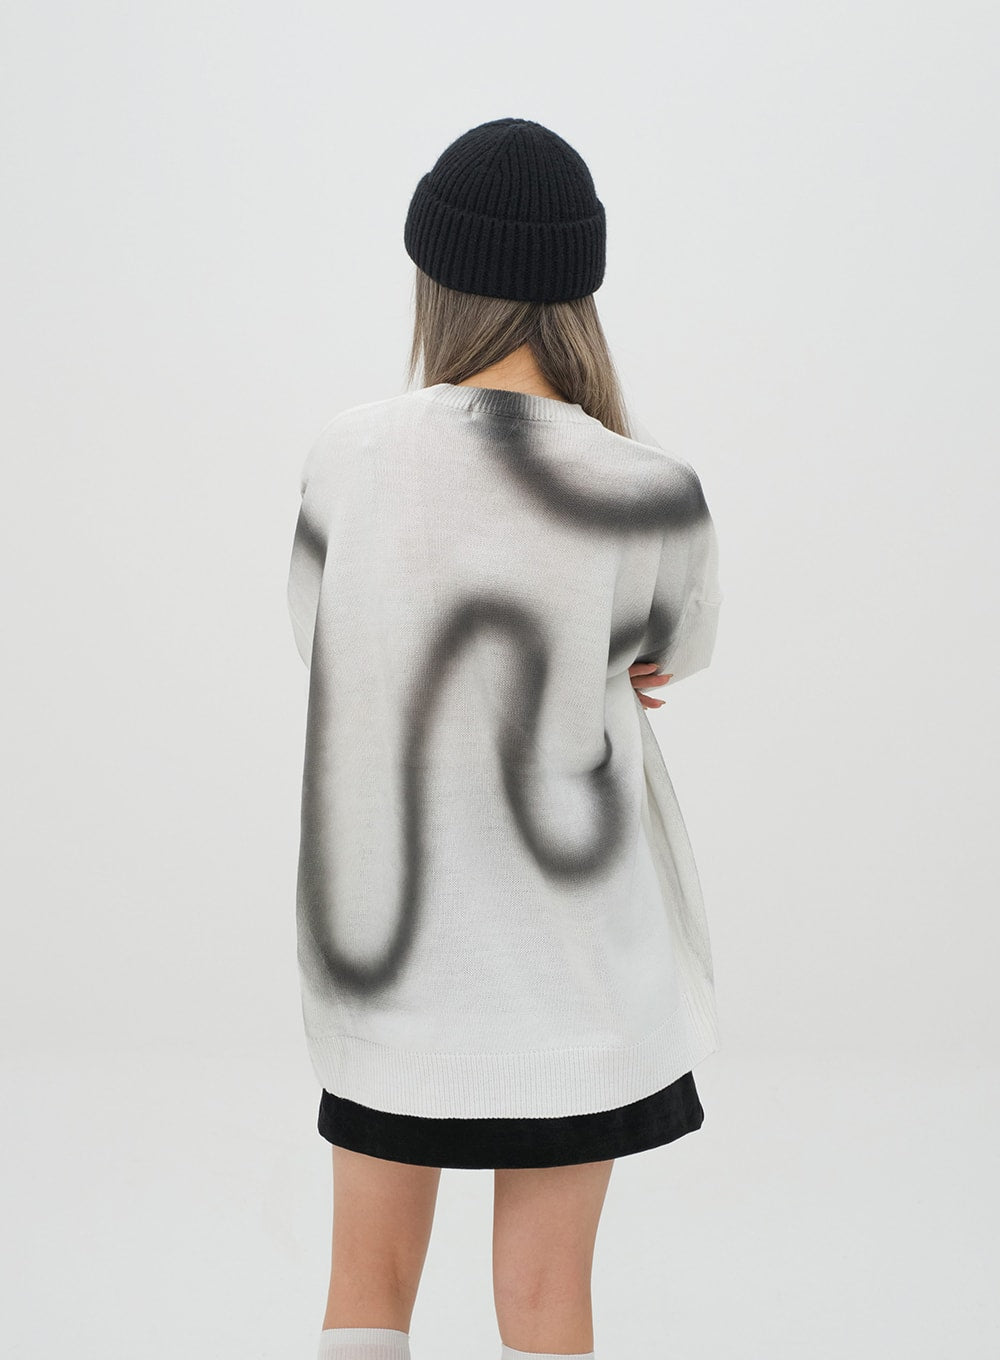 Graffiti Print Knit Pullover